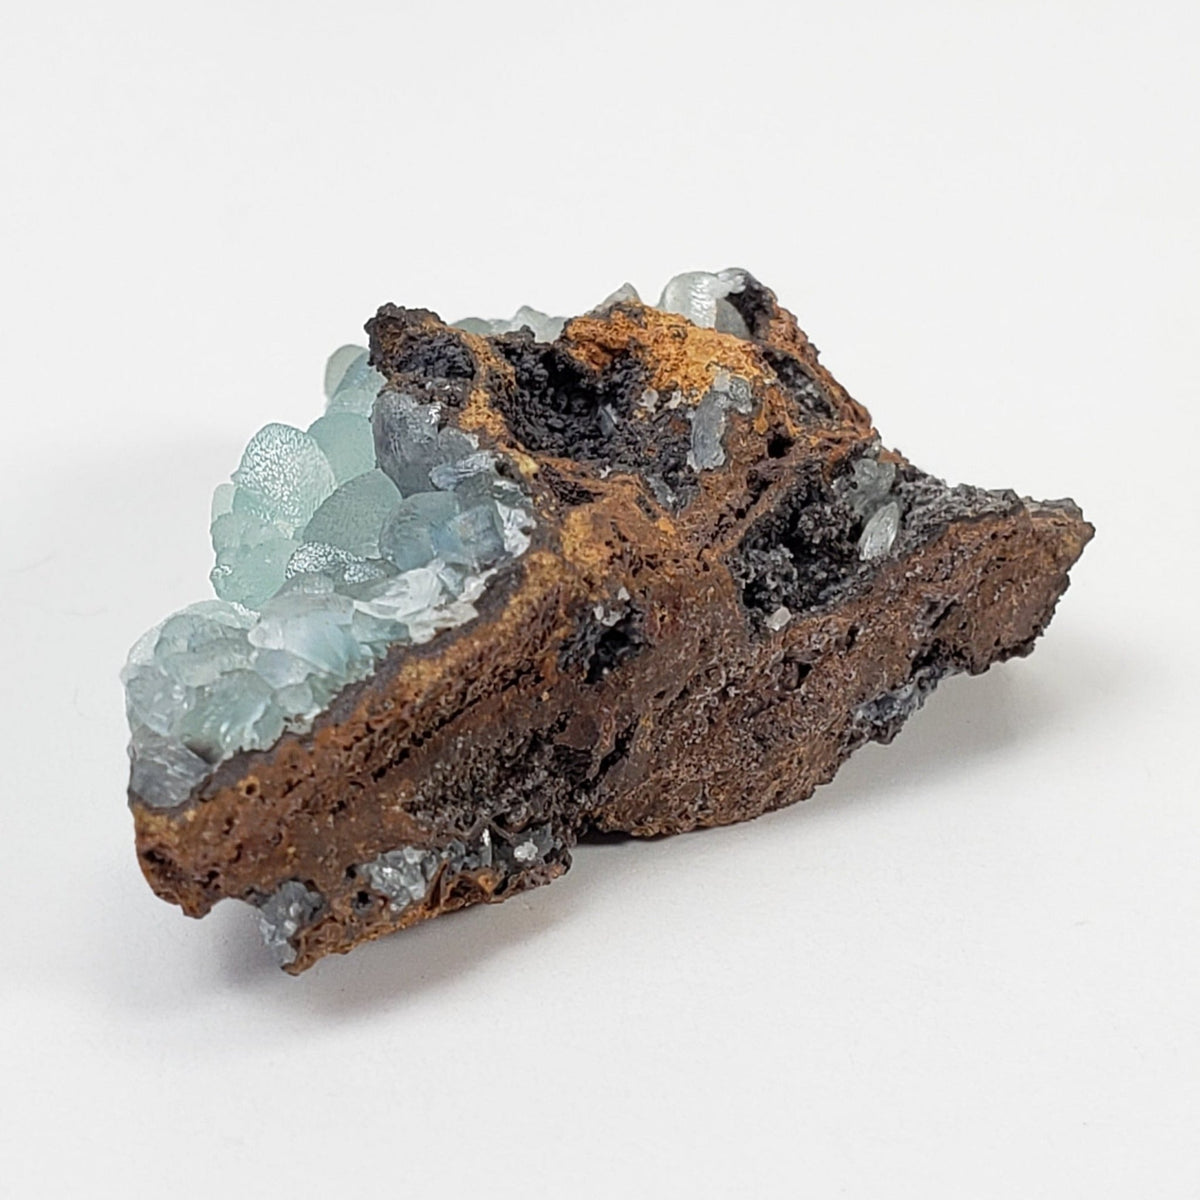 Smithsonite Crystals on Matrix | Perky Box Thumbnail Specimen | Chihuahua, Mexico